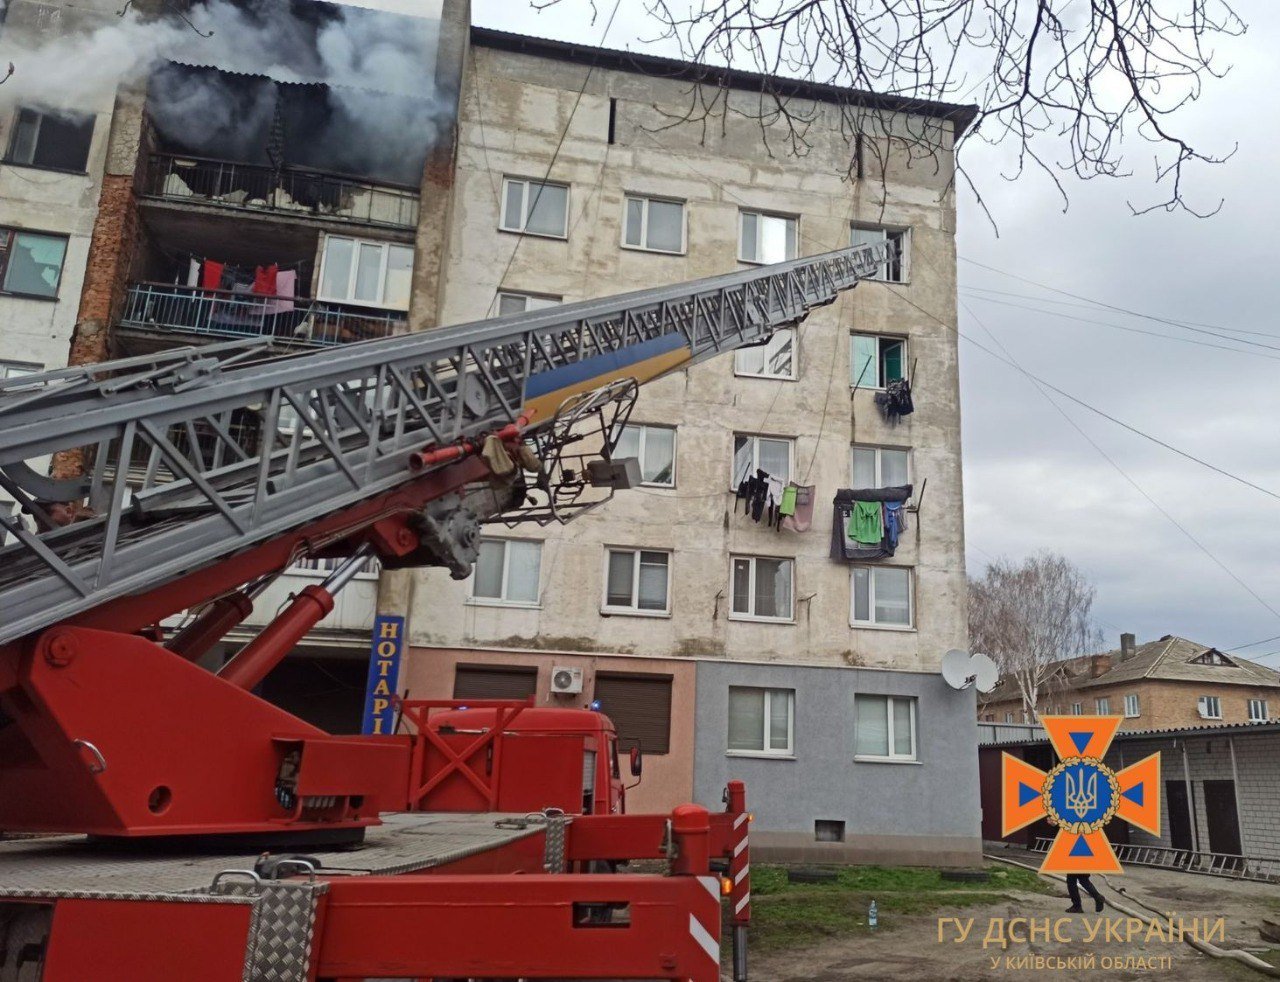 Рятувальники евакуювали з палаючої будівлі 18 осіб, з них 6 дітей